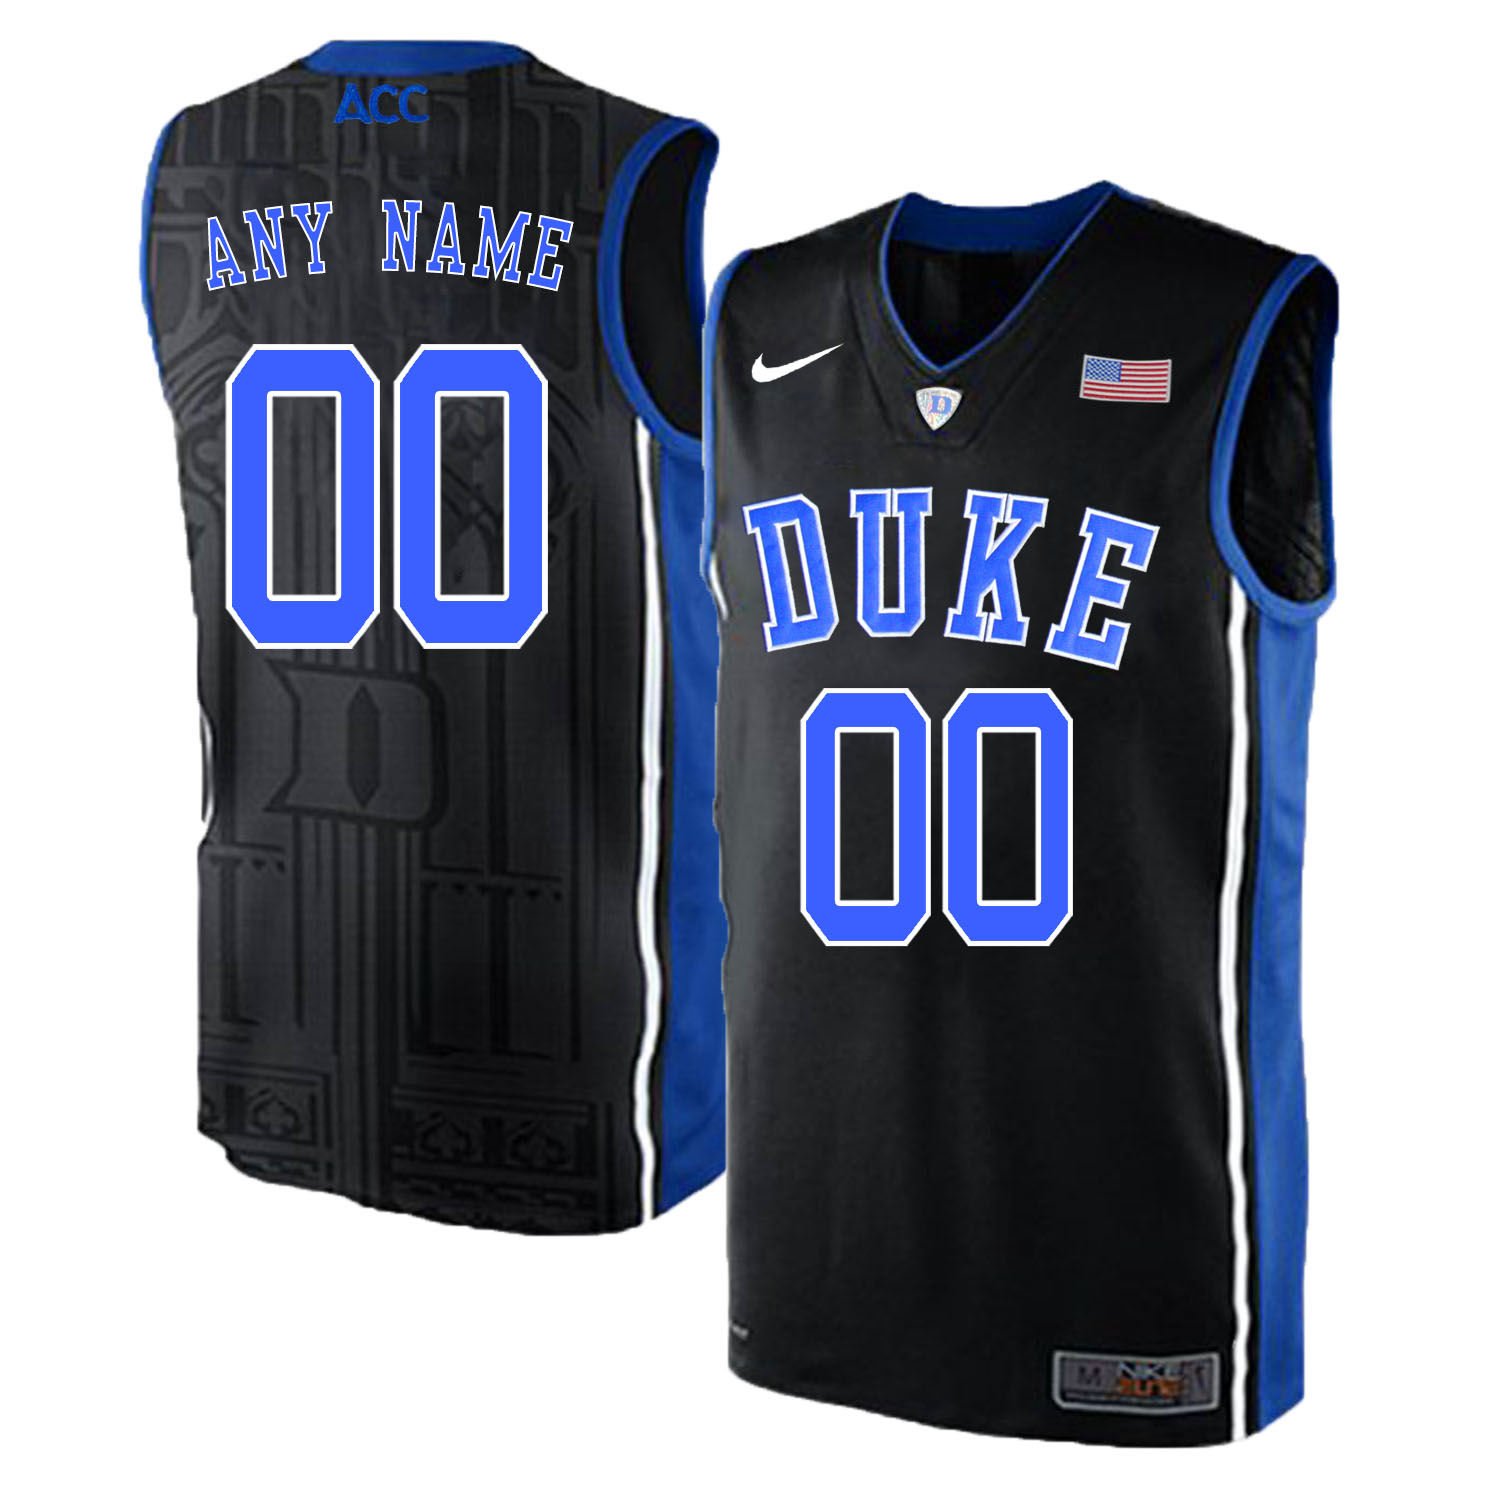 Duke Blue Devils Men's Customized Black Elite Nike College Basketball Jersey